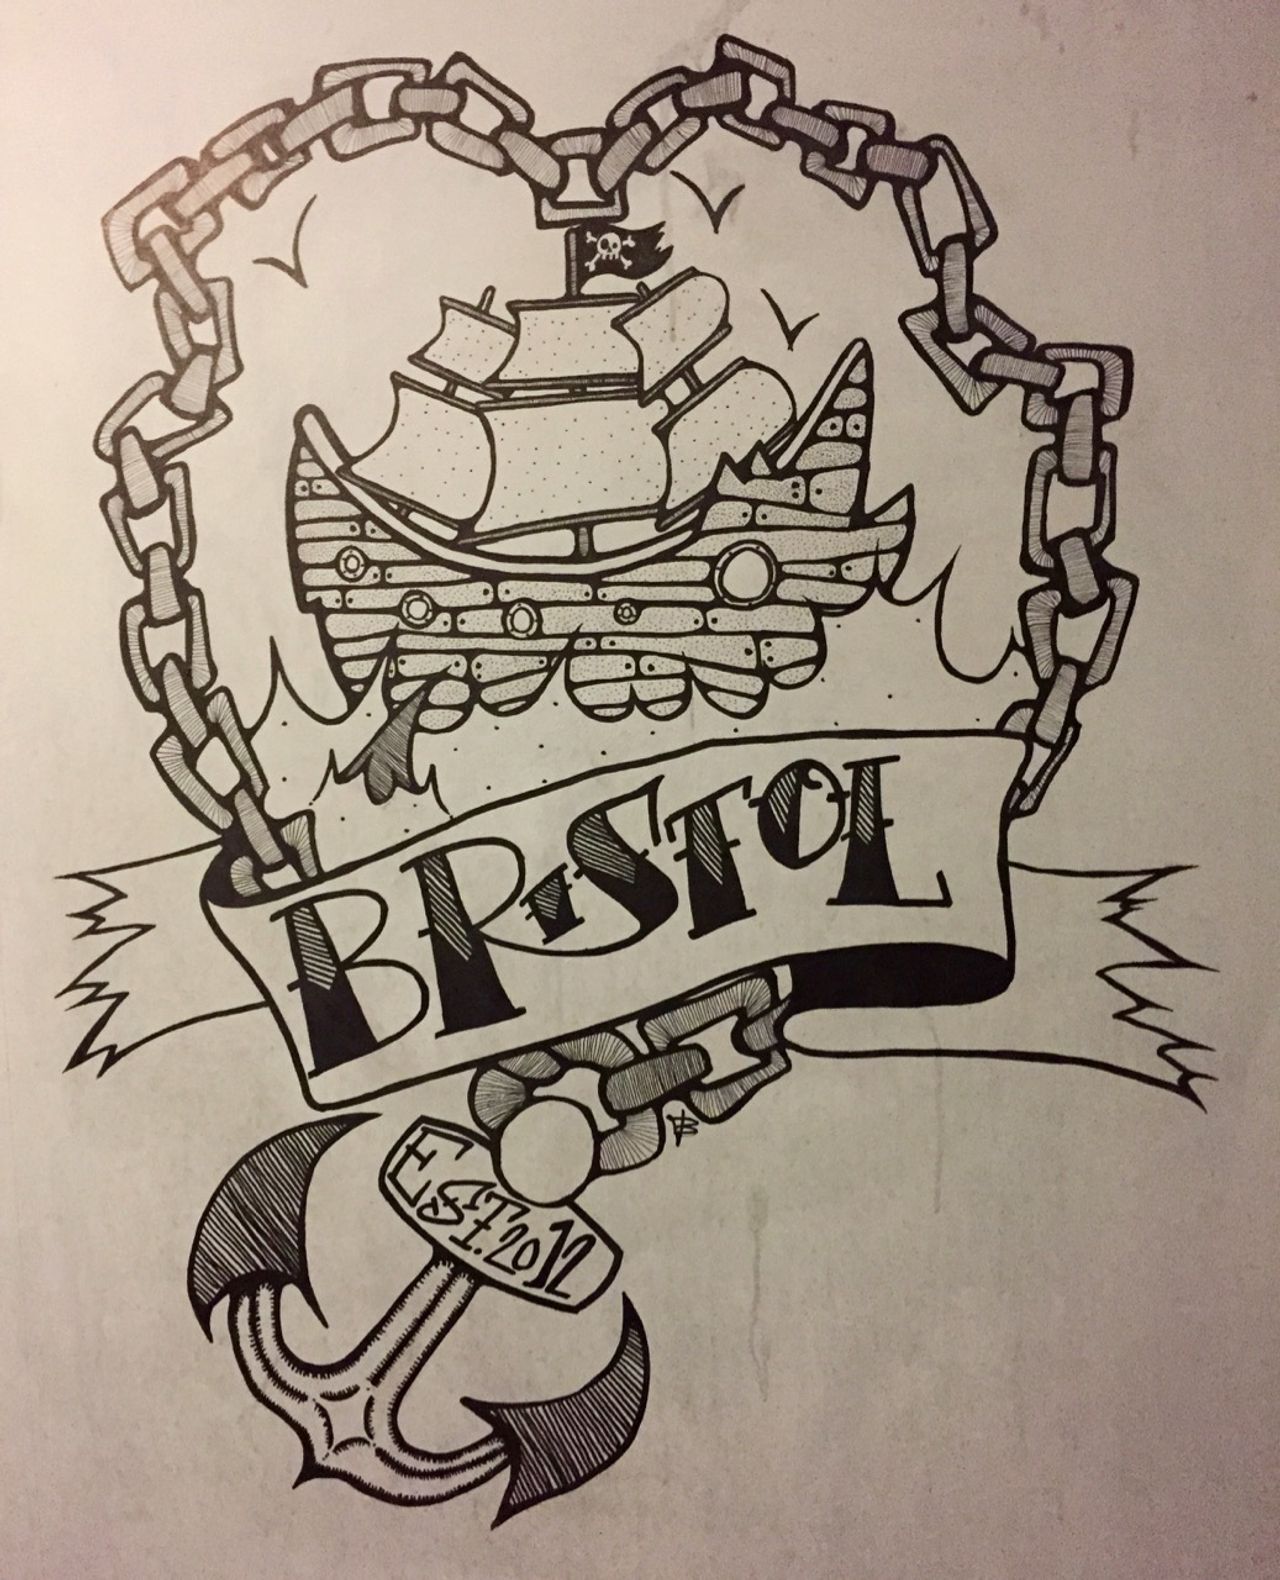 Tattoo art of the word Bristol